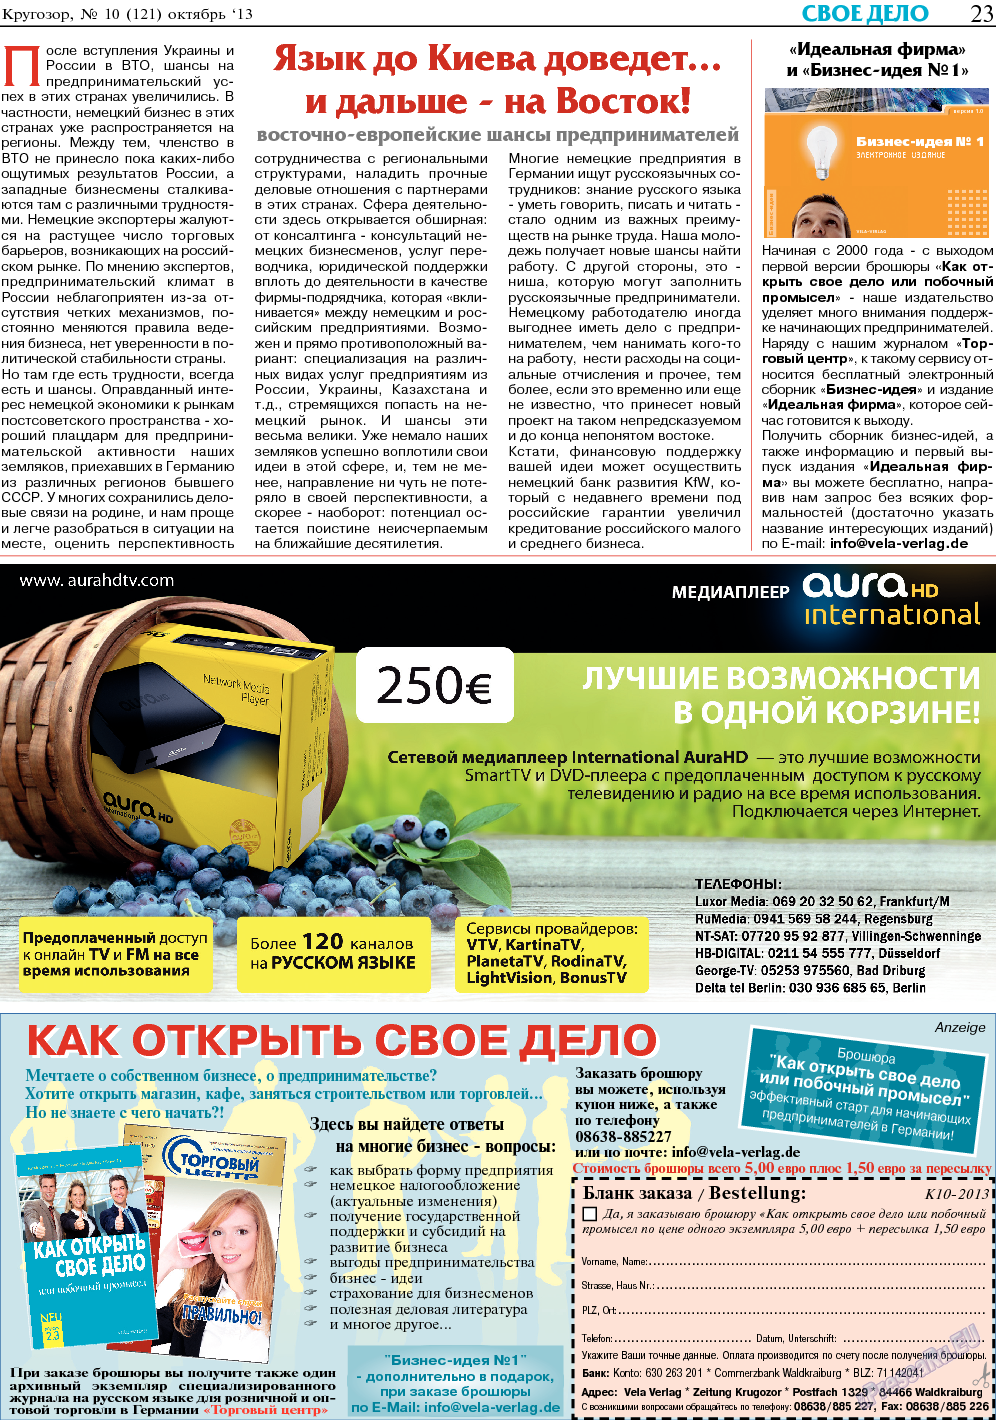 Кругозор, газета. 2013 №10 стр.23